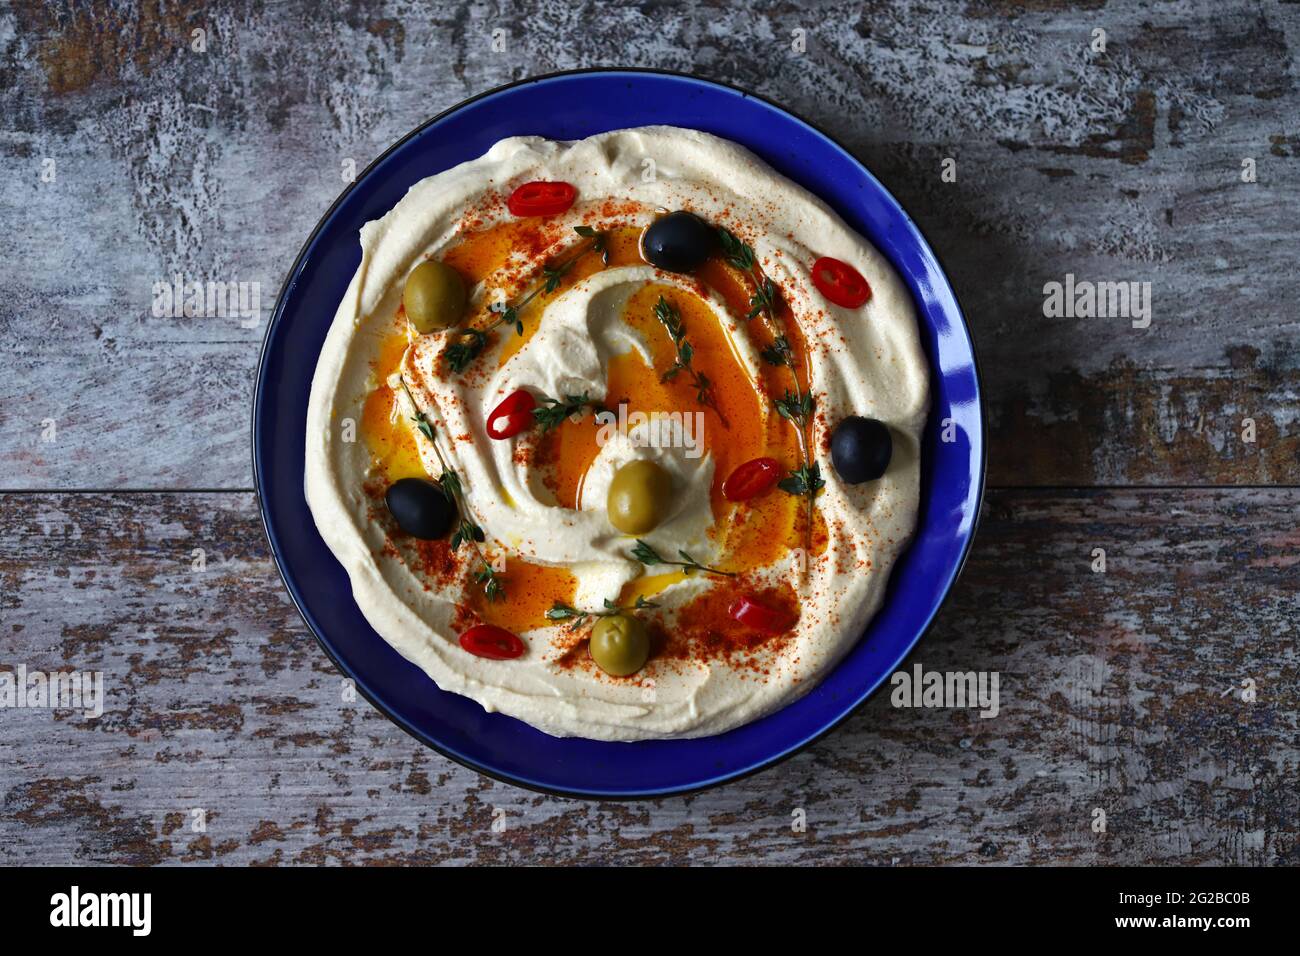 Houmous aux olives, paprika et huile d'olive dans une assiette bleue. Une collation traditionnelle du Moyen-Orient. Banque D'Images